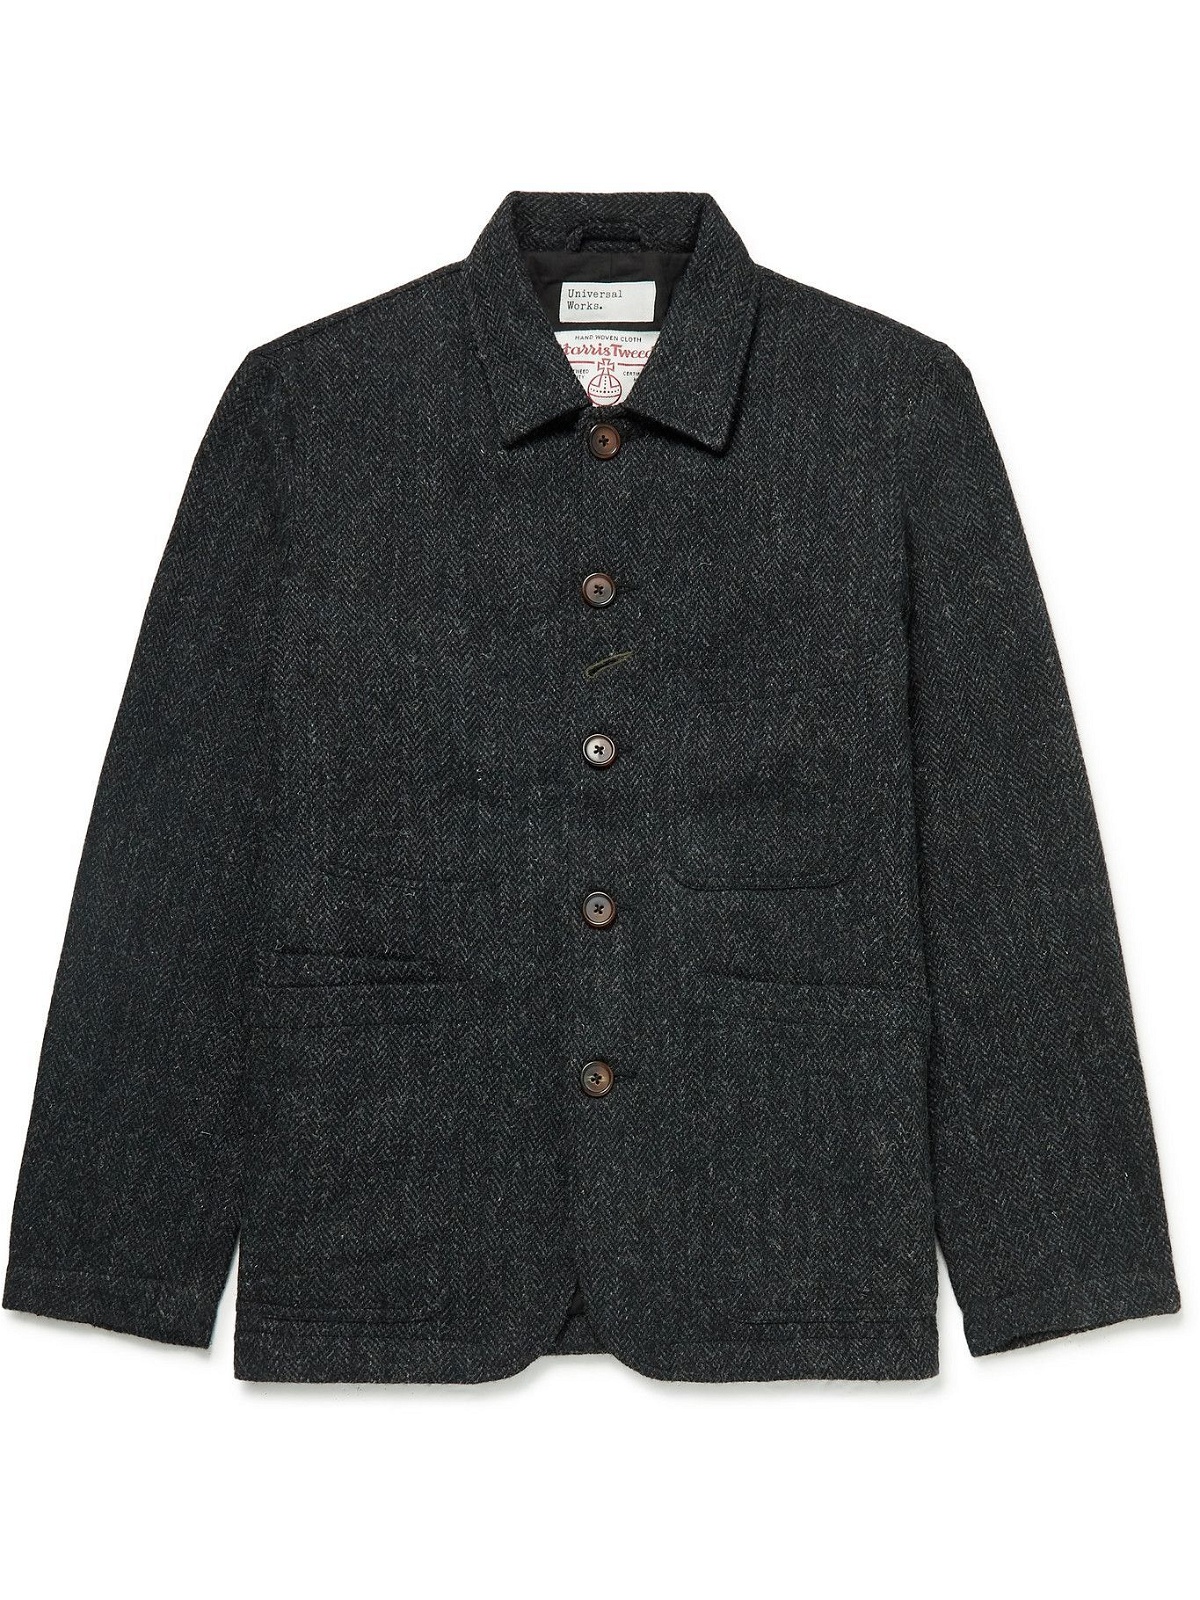 Universal Works - Bakers Herringbone Wool-Tweed Chore Jacket - Gray ...